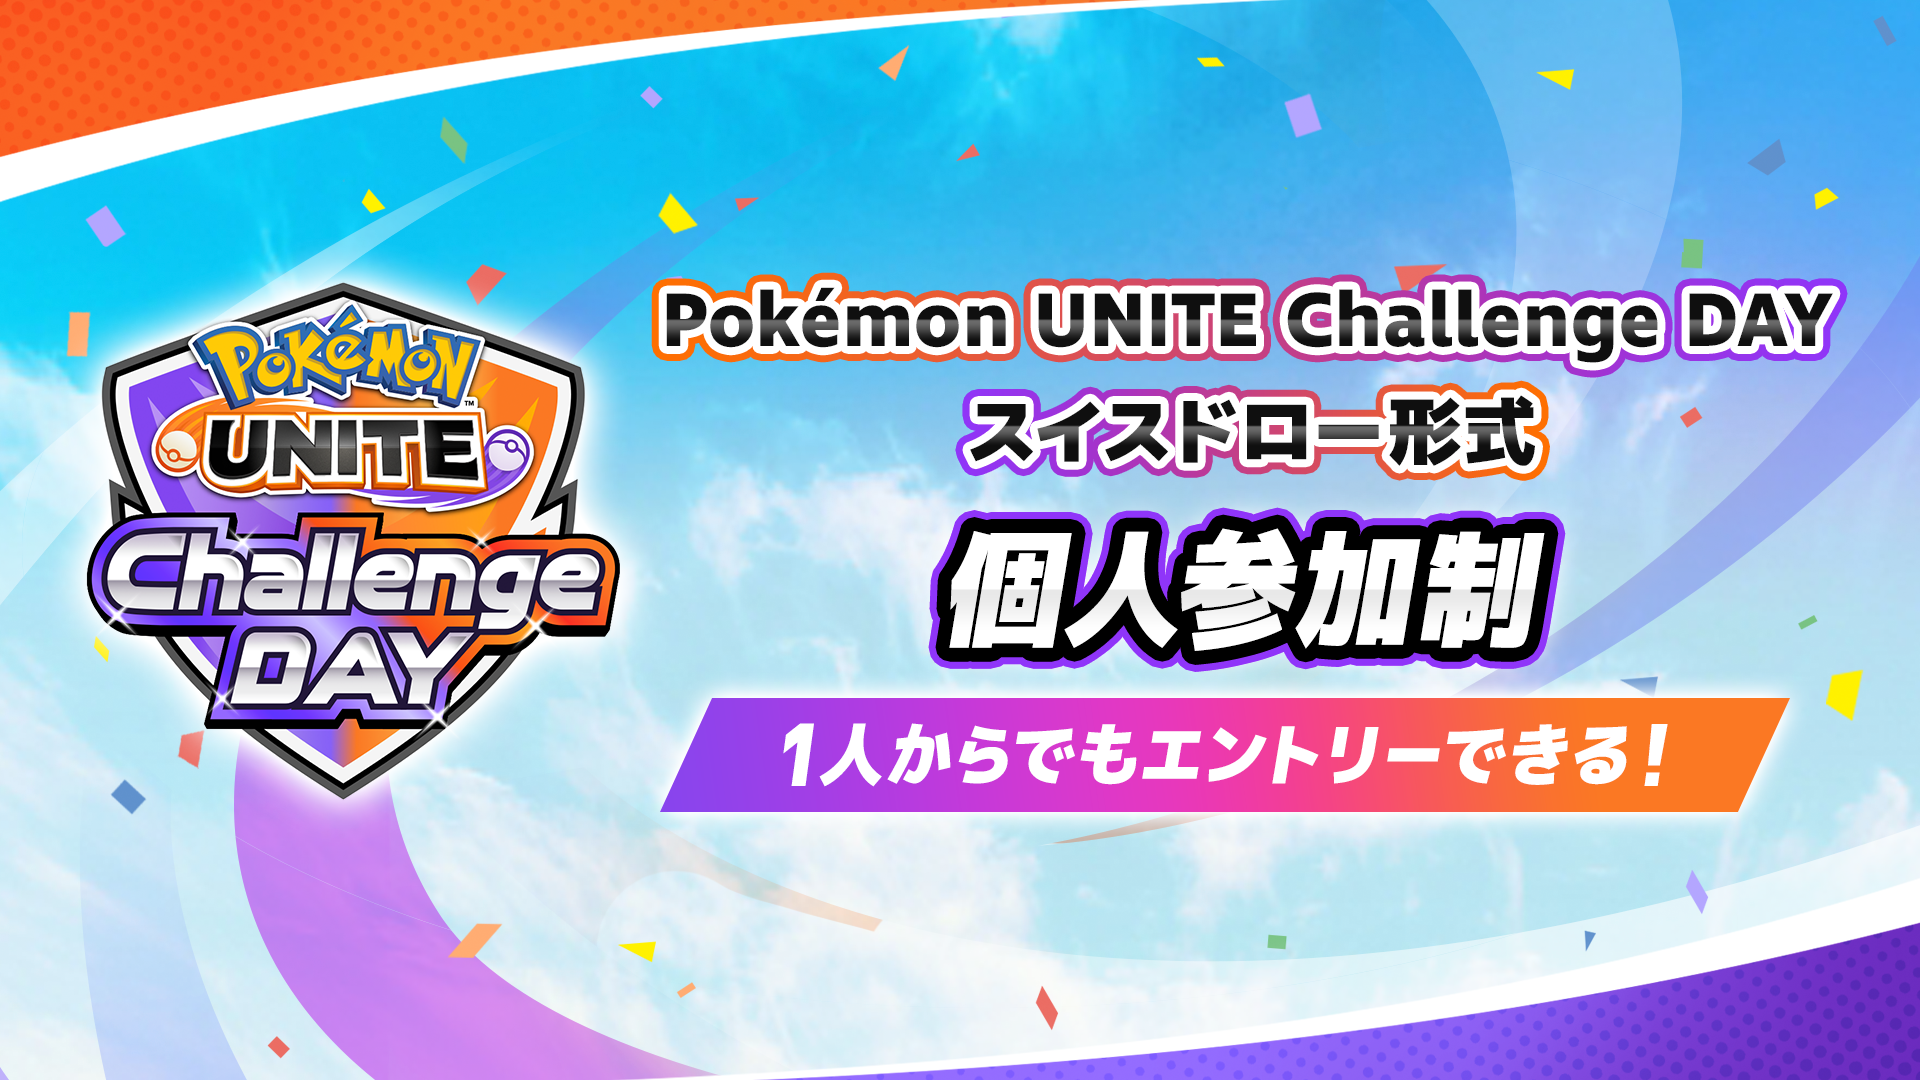 Pokemon UNITE Challenge DAY 09.02 個人参加制 スイスドロー形式 午前の部・午後の部 計3イベント開催！